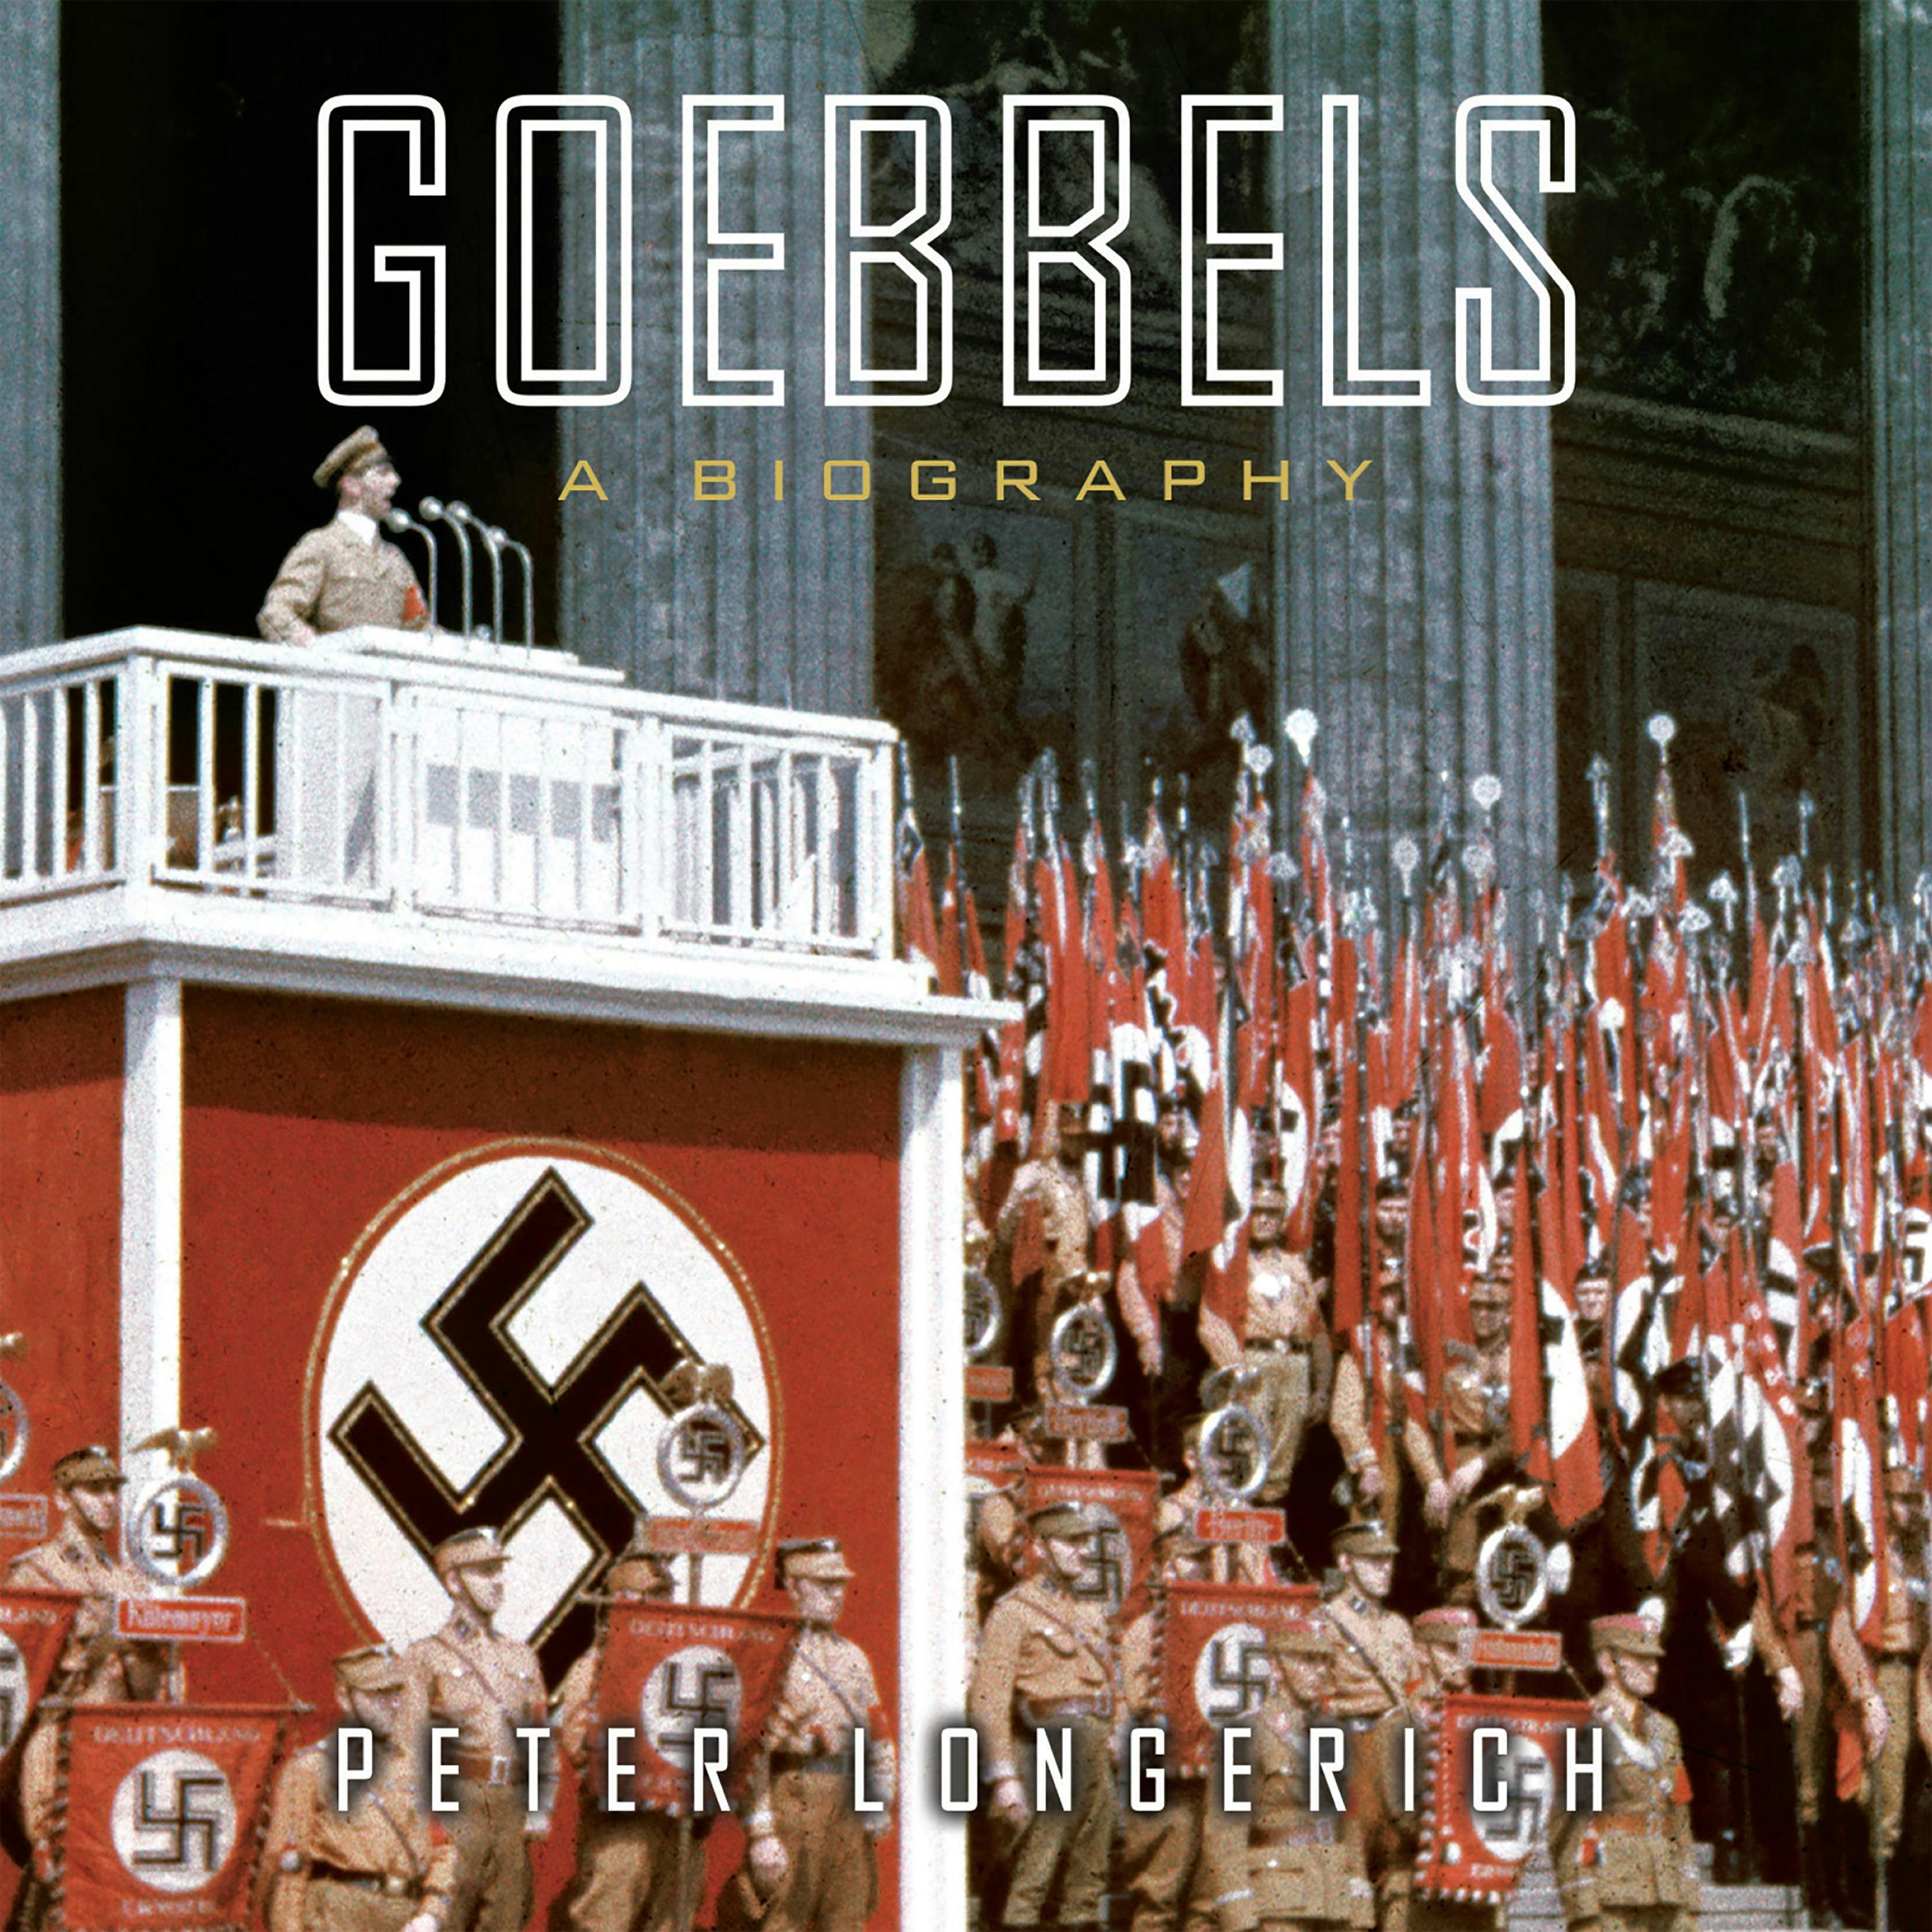 Goebbels: A Biography - Peter Longerich